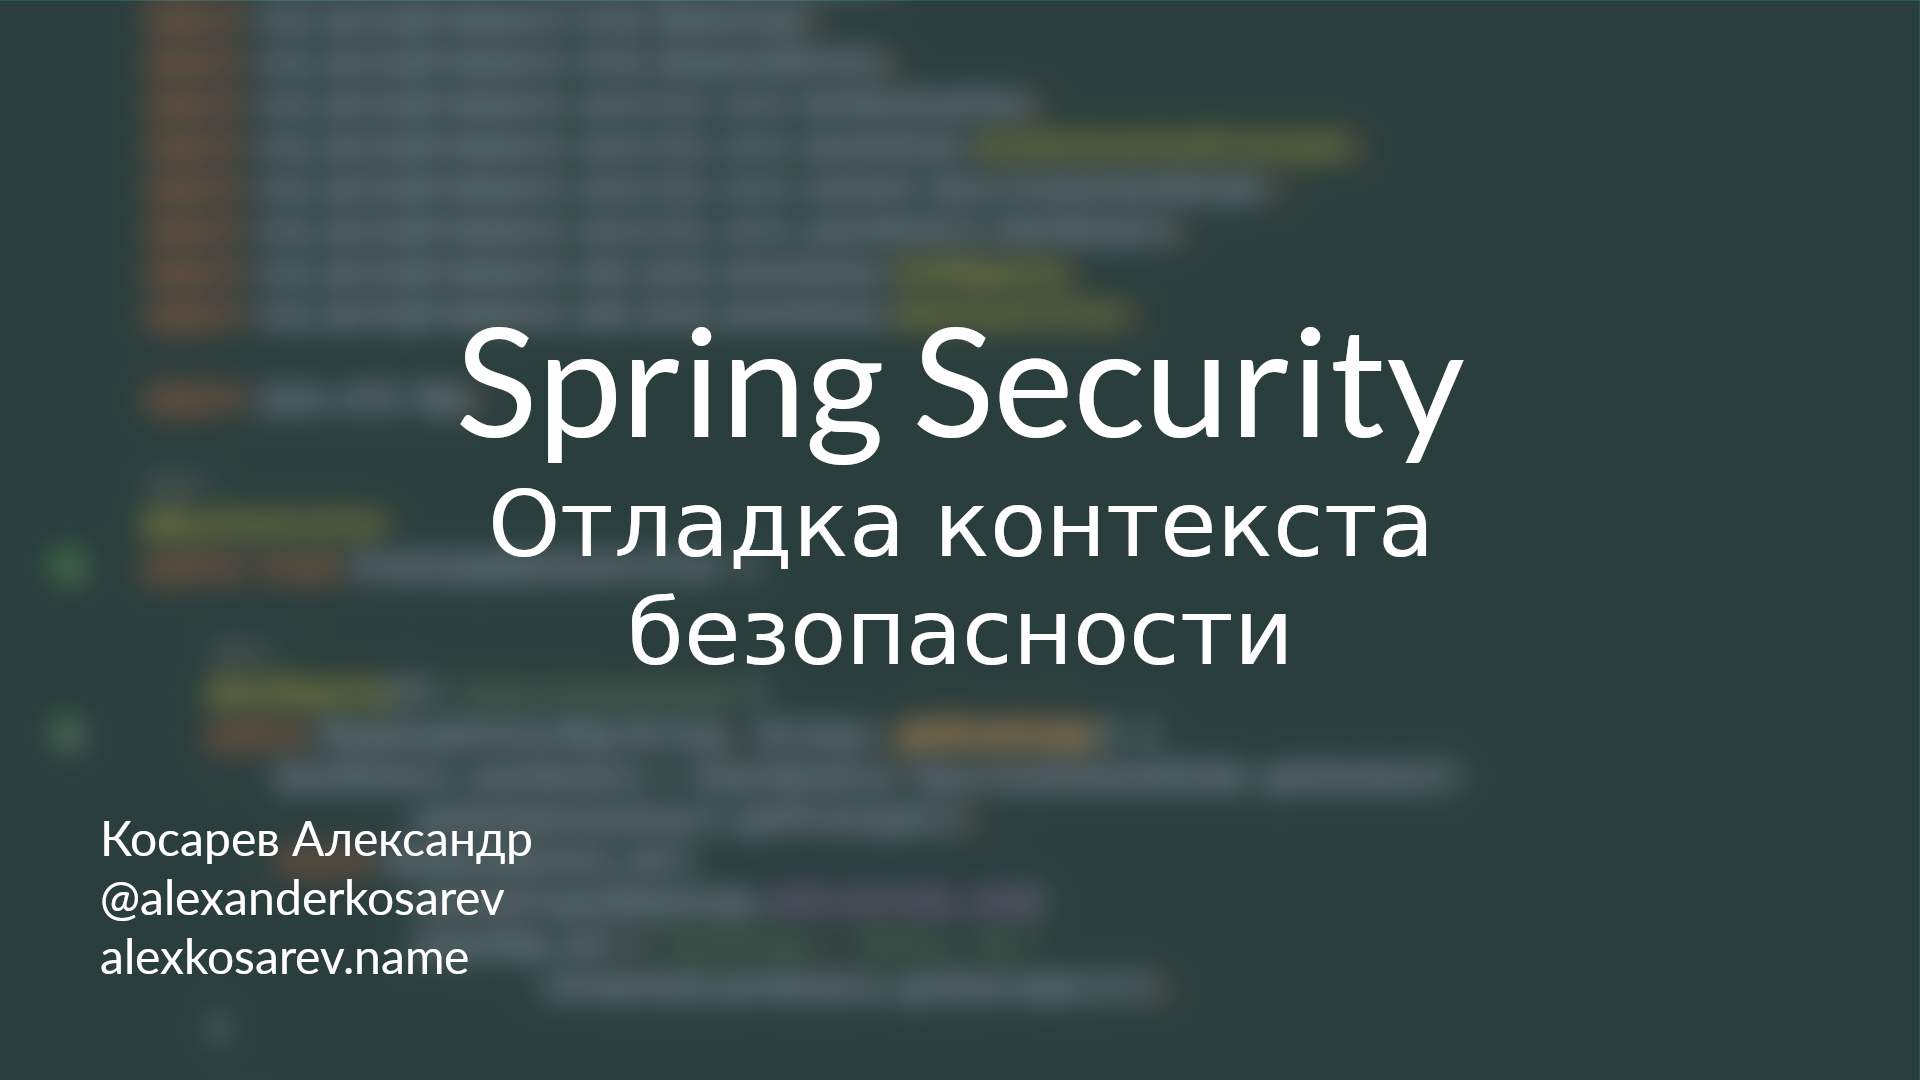 Отладка контекста безопасности - Spring Security в деталях